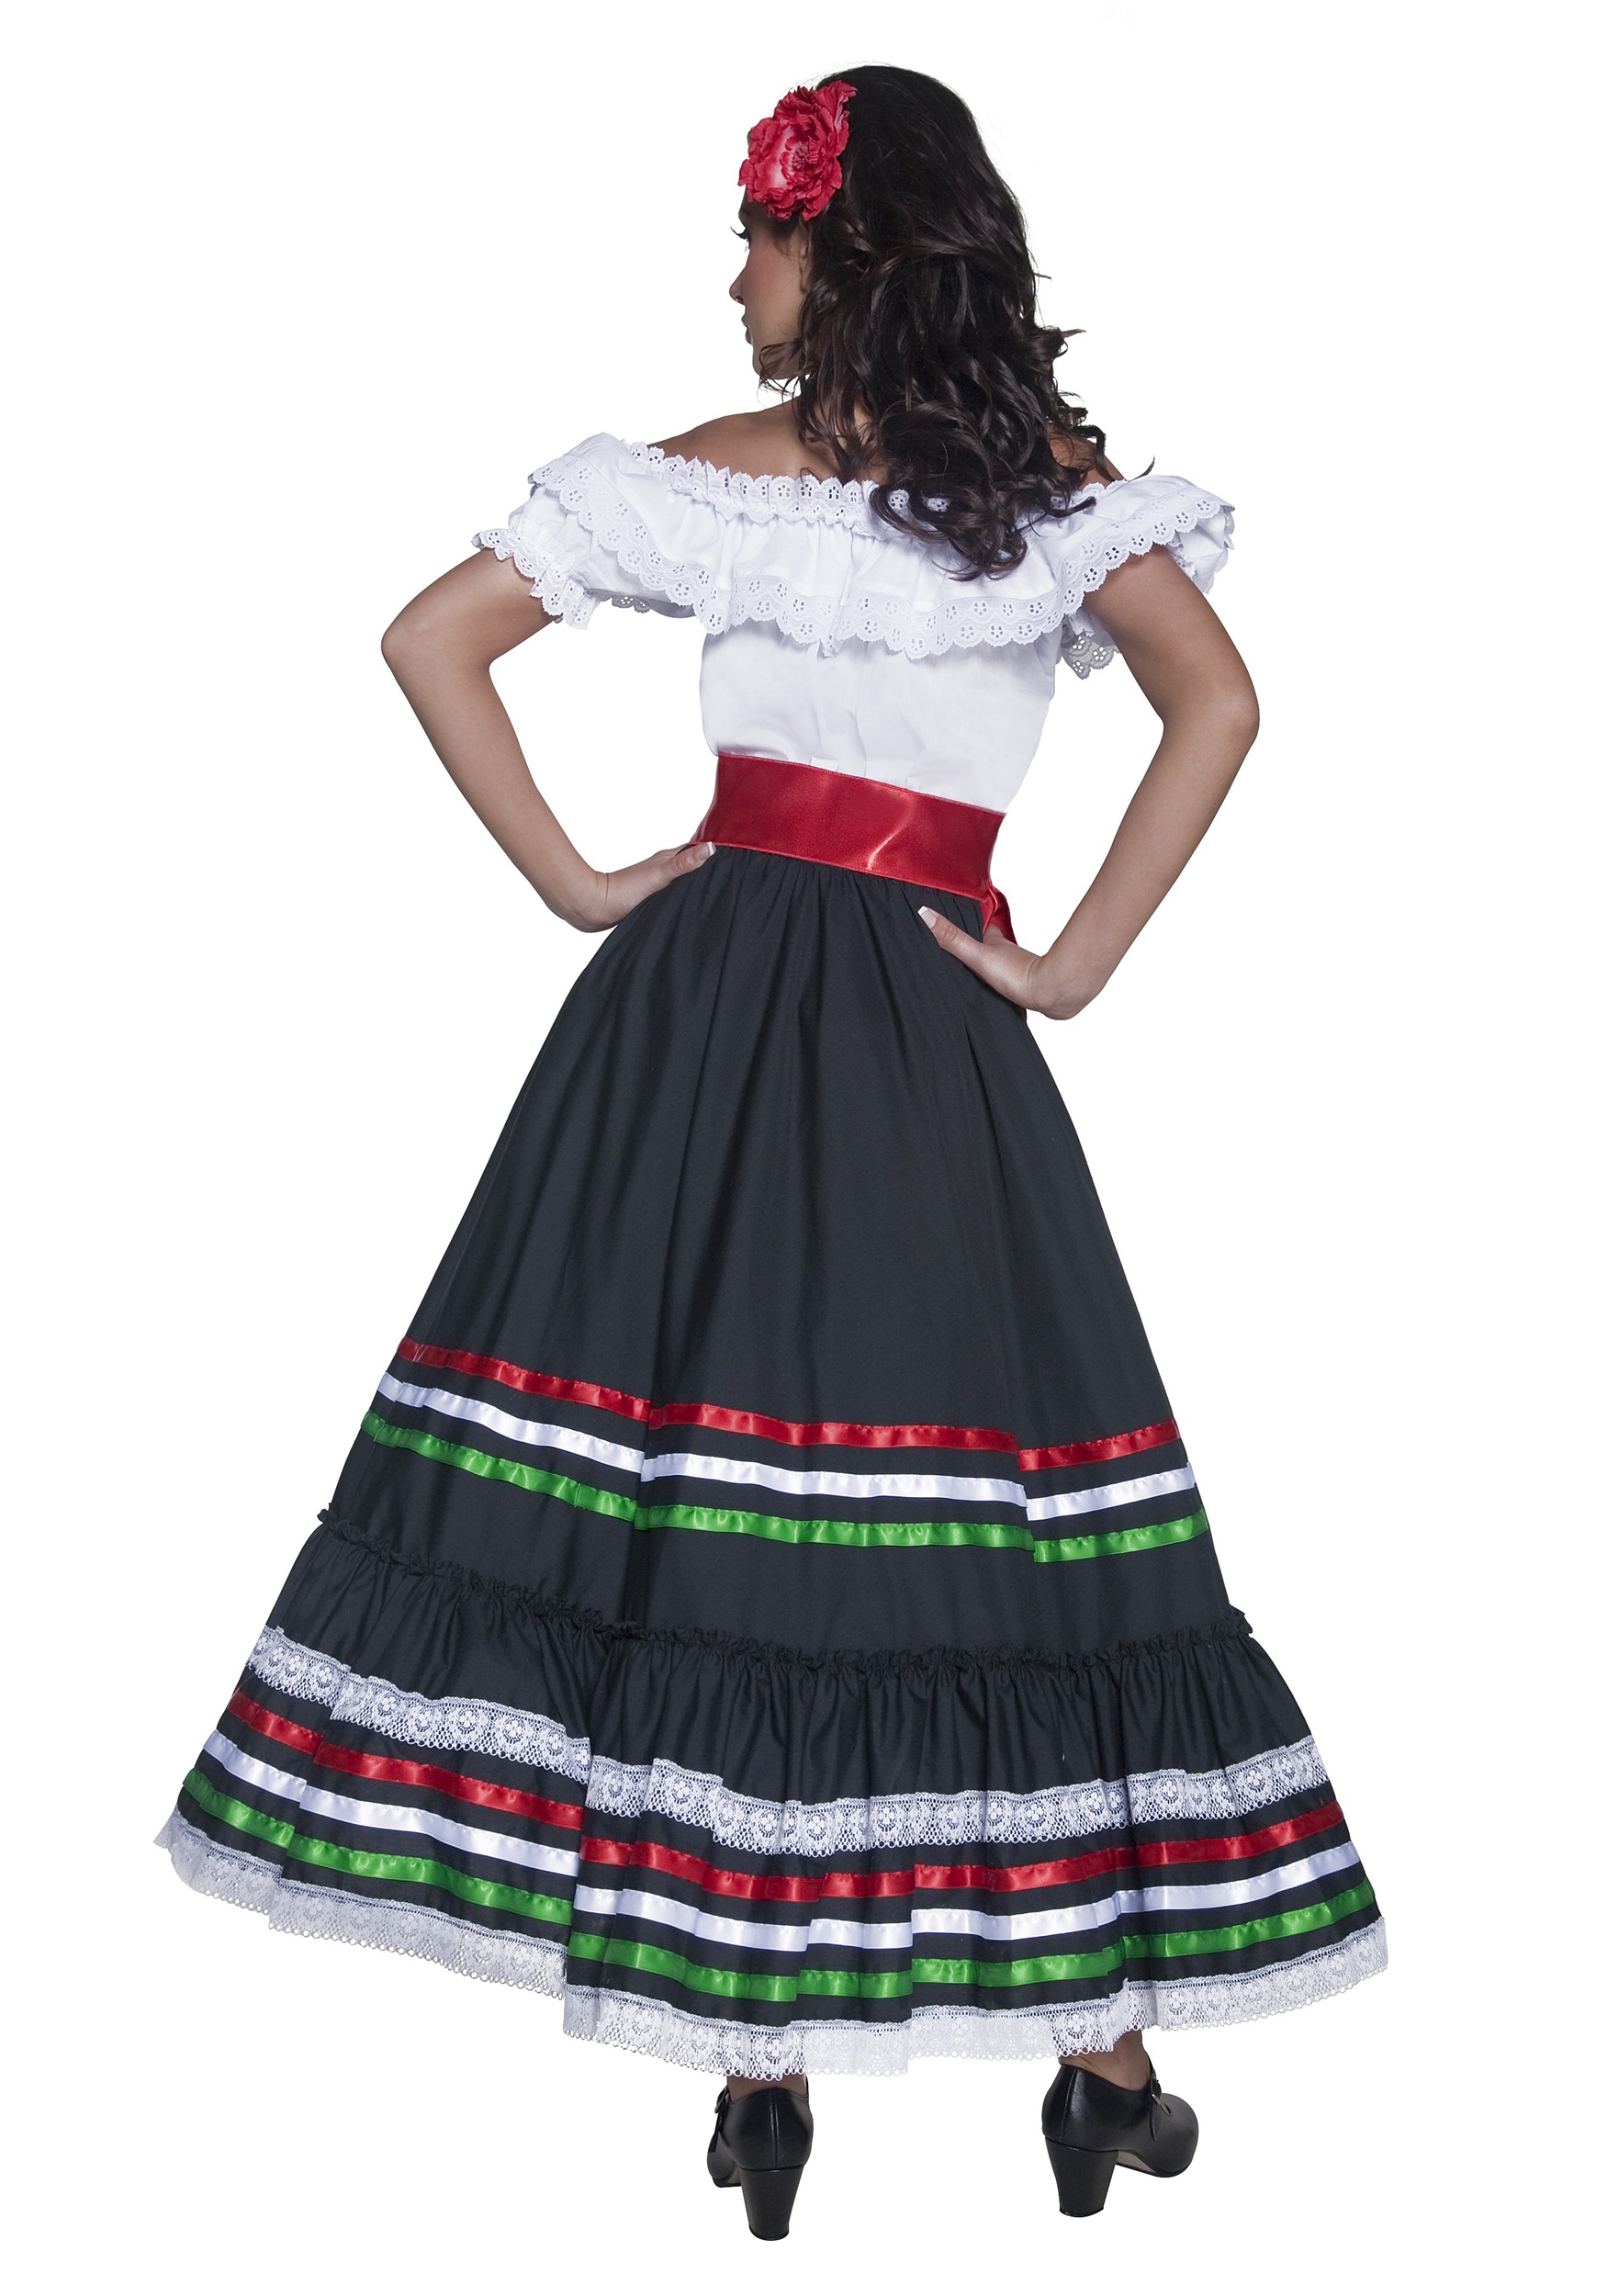 Authentic Western Senorita Fancy Dress Costume , Spanish Fancy Dress Costumes For Women